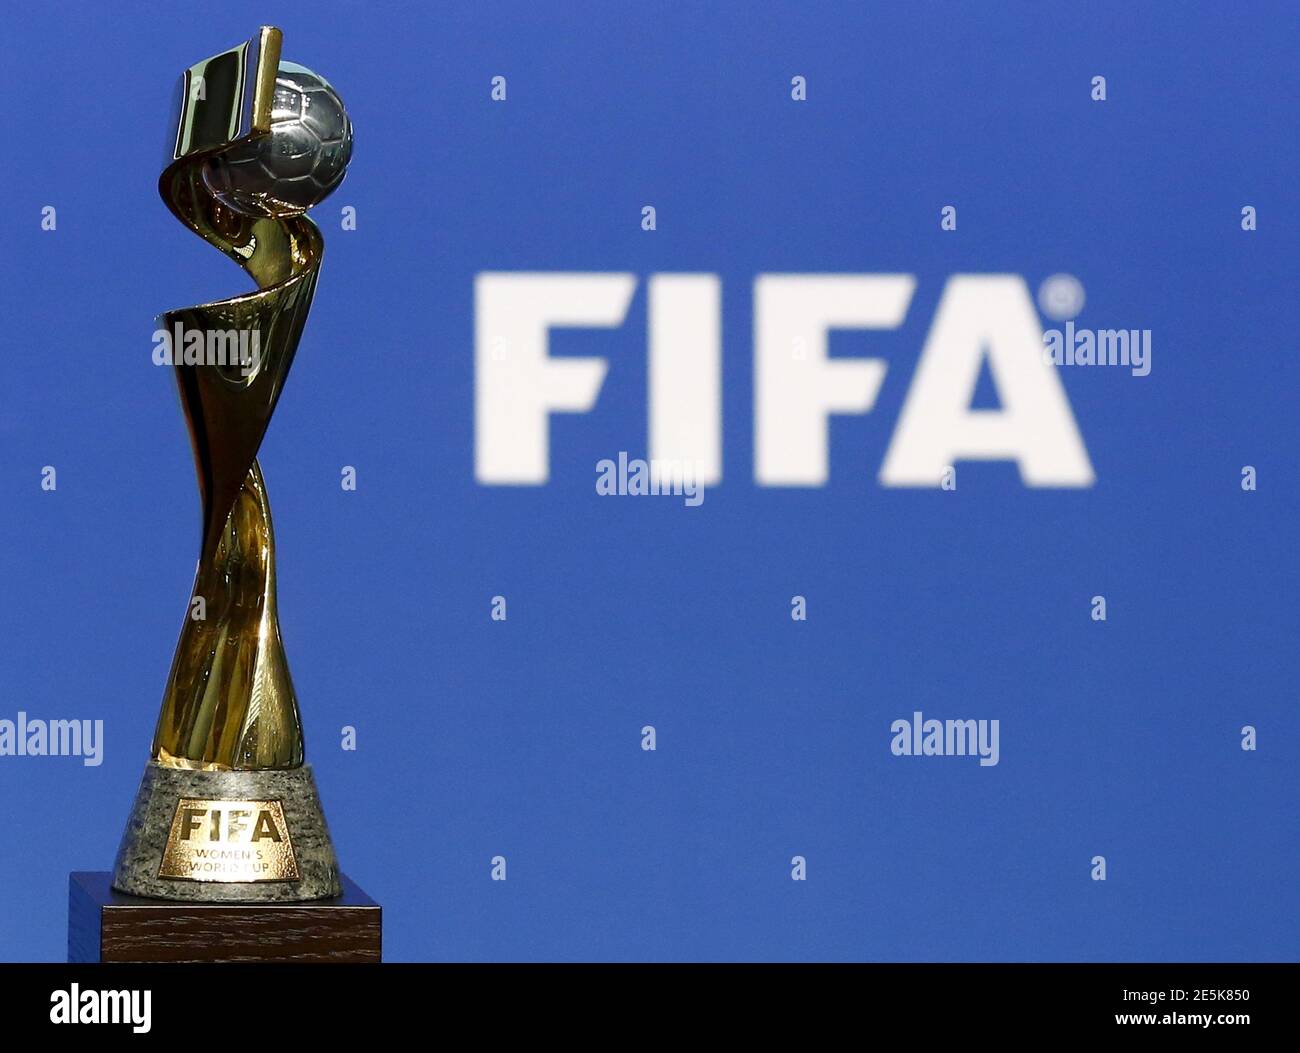 El trofeo de la FIFA de la Copa Mundial Femenina de la FIFA se ve antes de la ceremonia de anuncio de la Mundial Femenina la FIFA 2019 en su